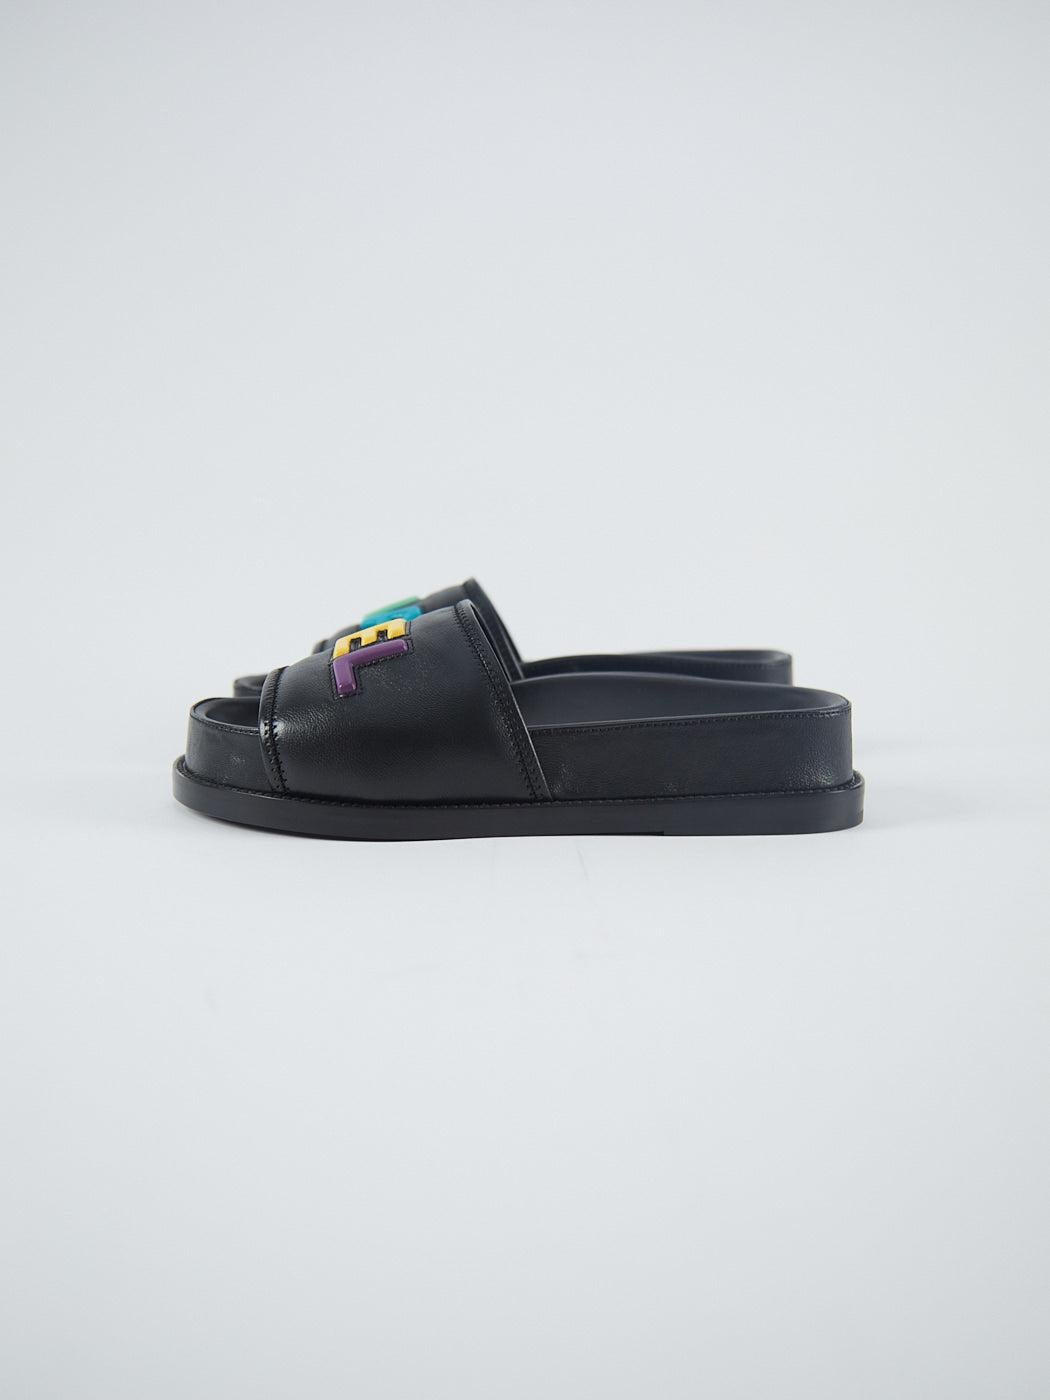 CHANEL SLIDE SANDALS Noir avec logo multicolore - Taille 37 Unisexe en vente